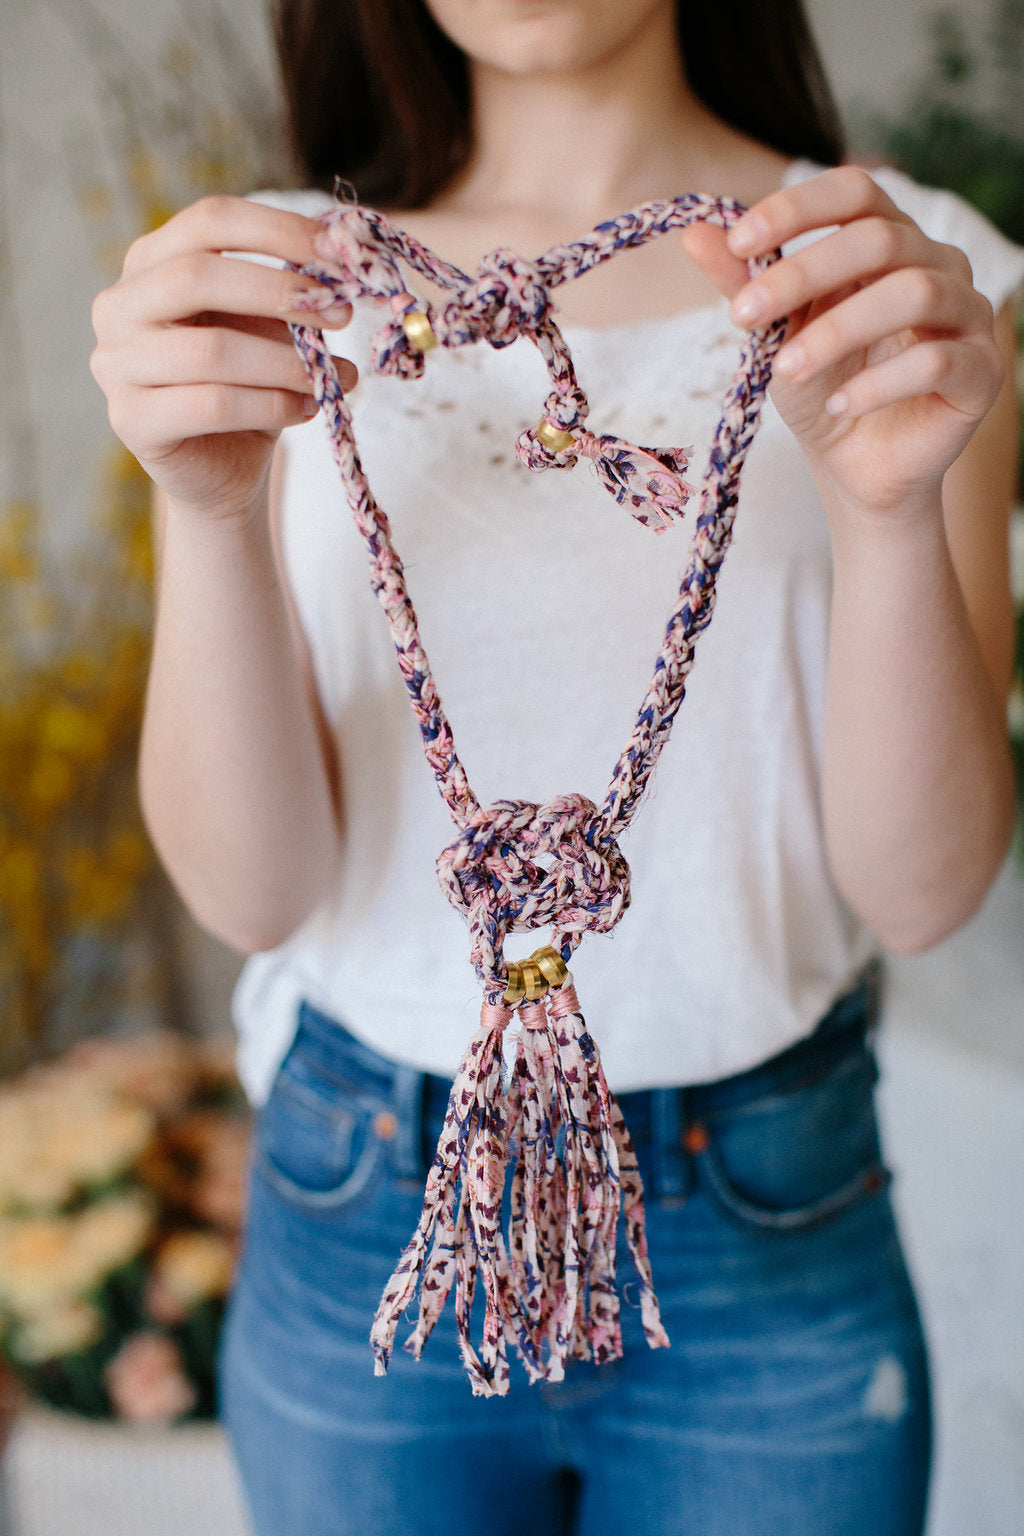 Knit Collage Celtic Knot Necklace Pattern